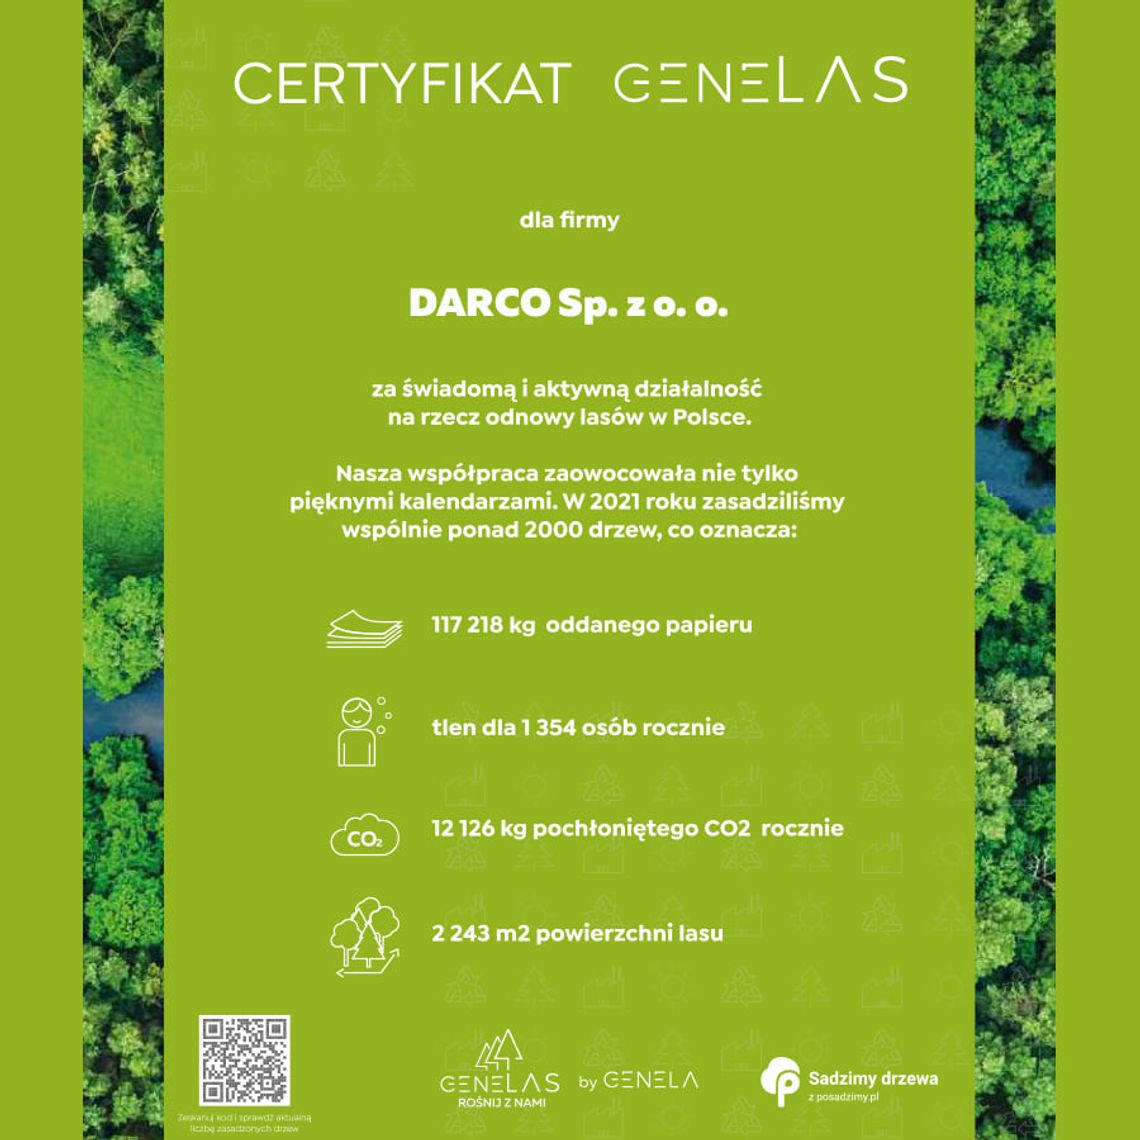 Certyfikat GeneLAS dla firmy Darco